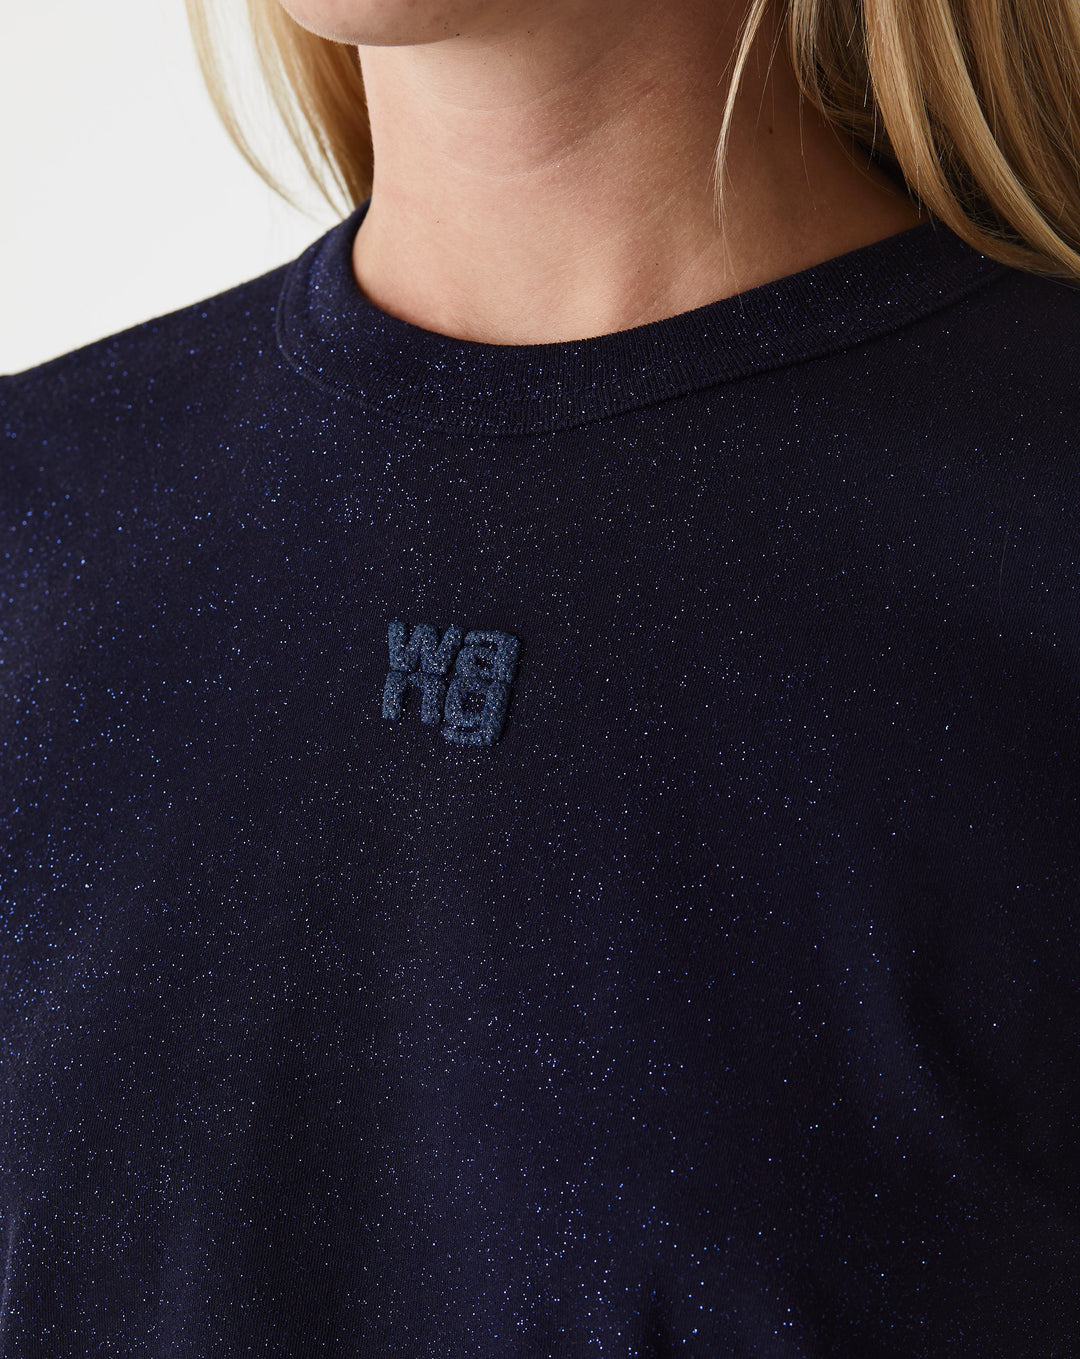 Alexander Wang Women's Essential Jersey Shrunk T-Shirt  - XHIBITION